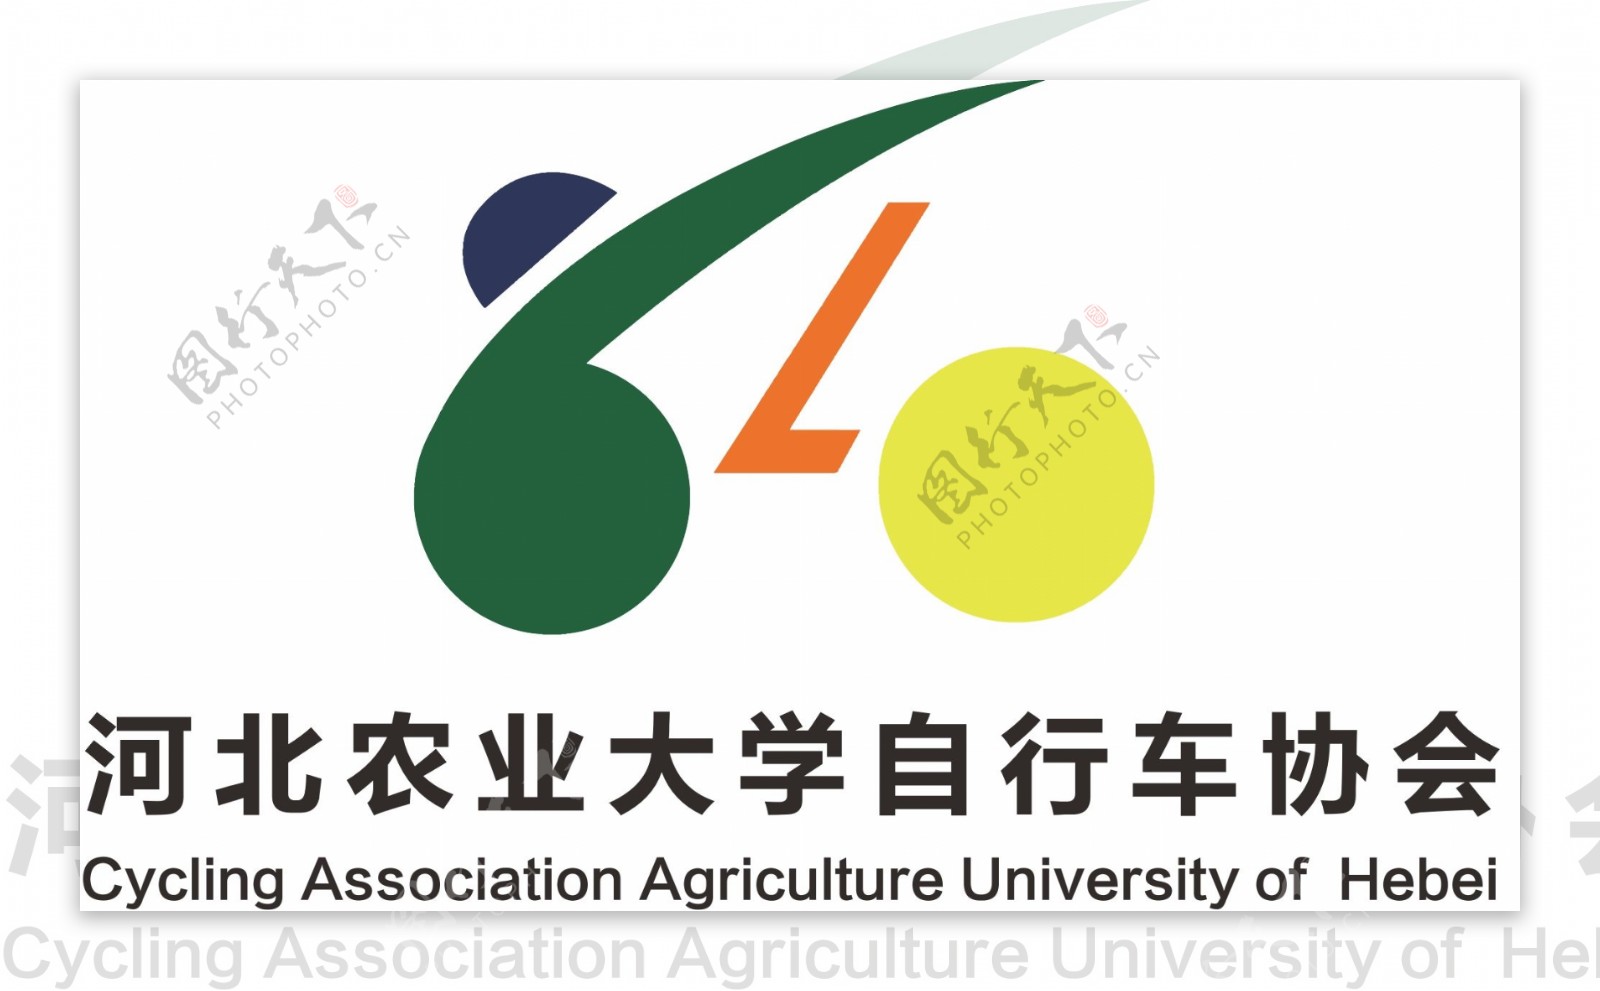 河北农业大学自行车协会旗帜